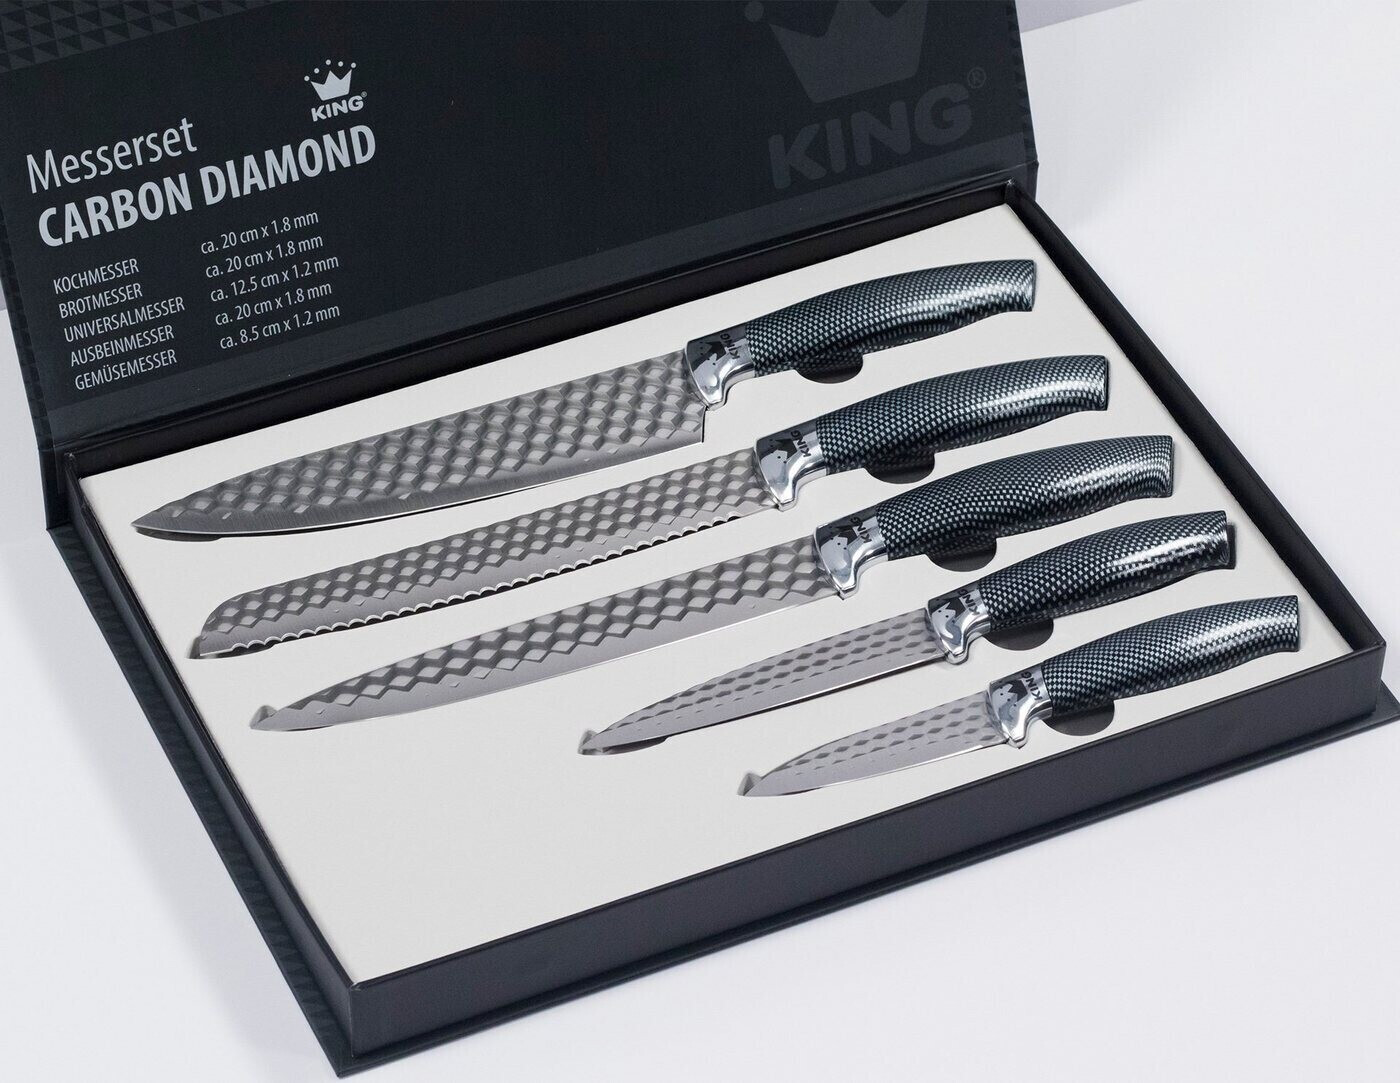 22,99 King 5-teilig Messer-Set | Preisvergleich Diamond ab Carbon bei €